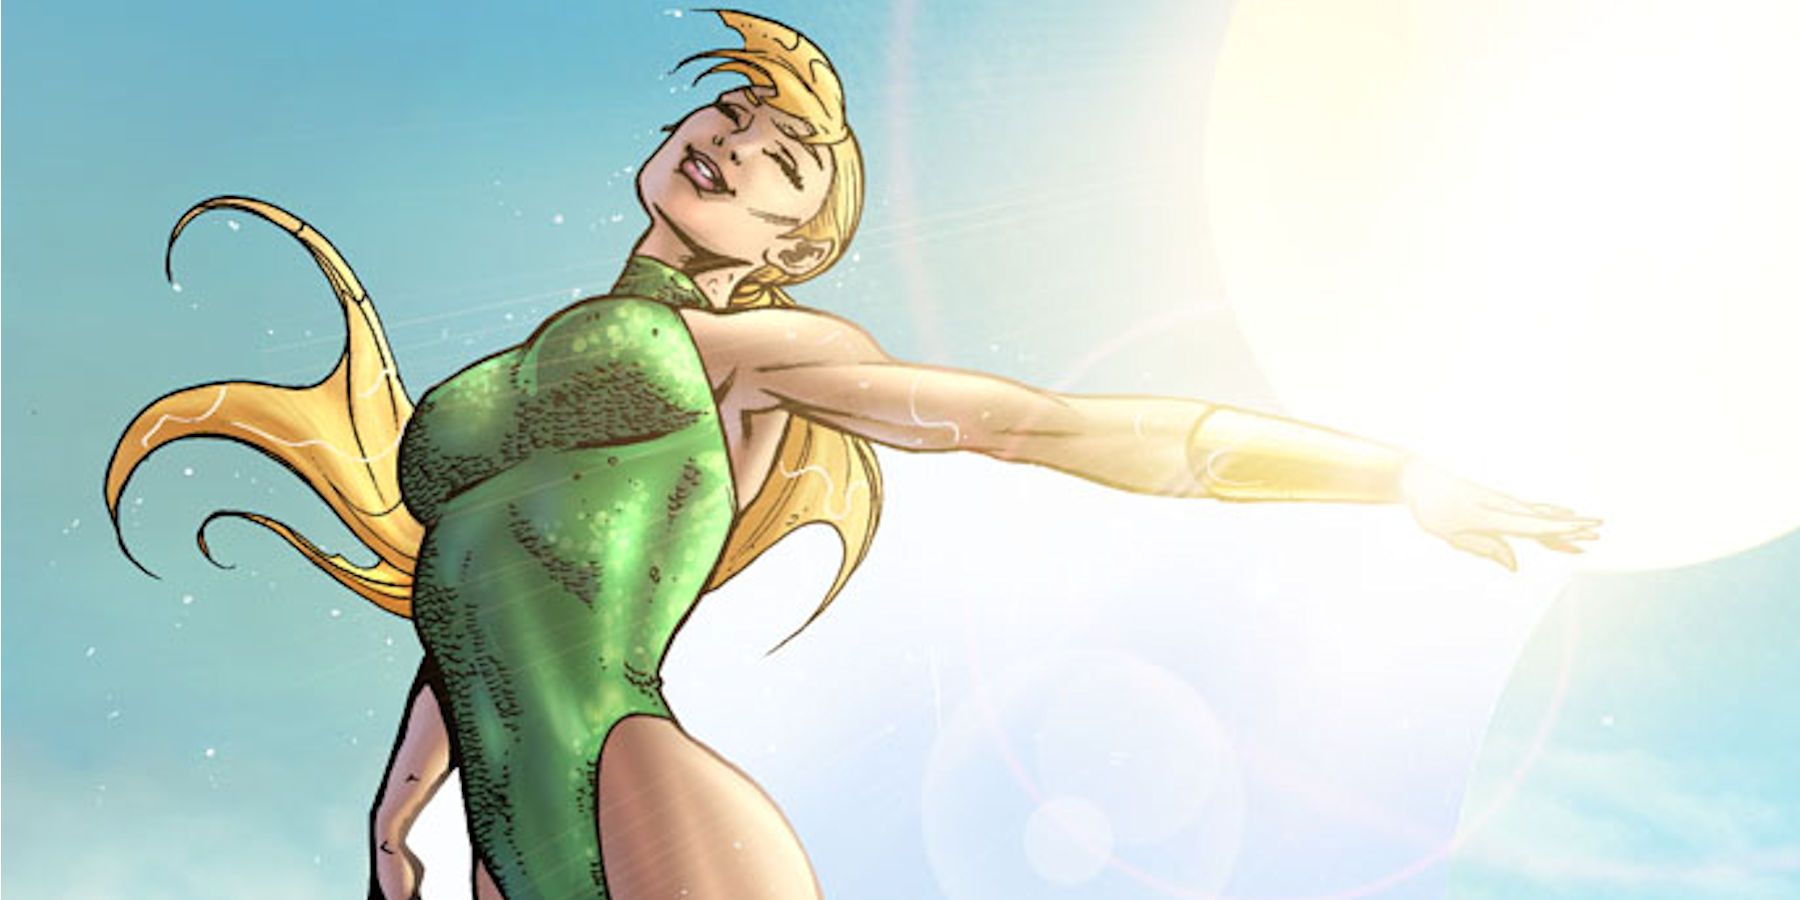 Namorita as seen in Marvel Comics